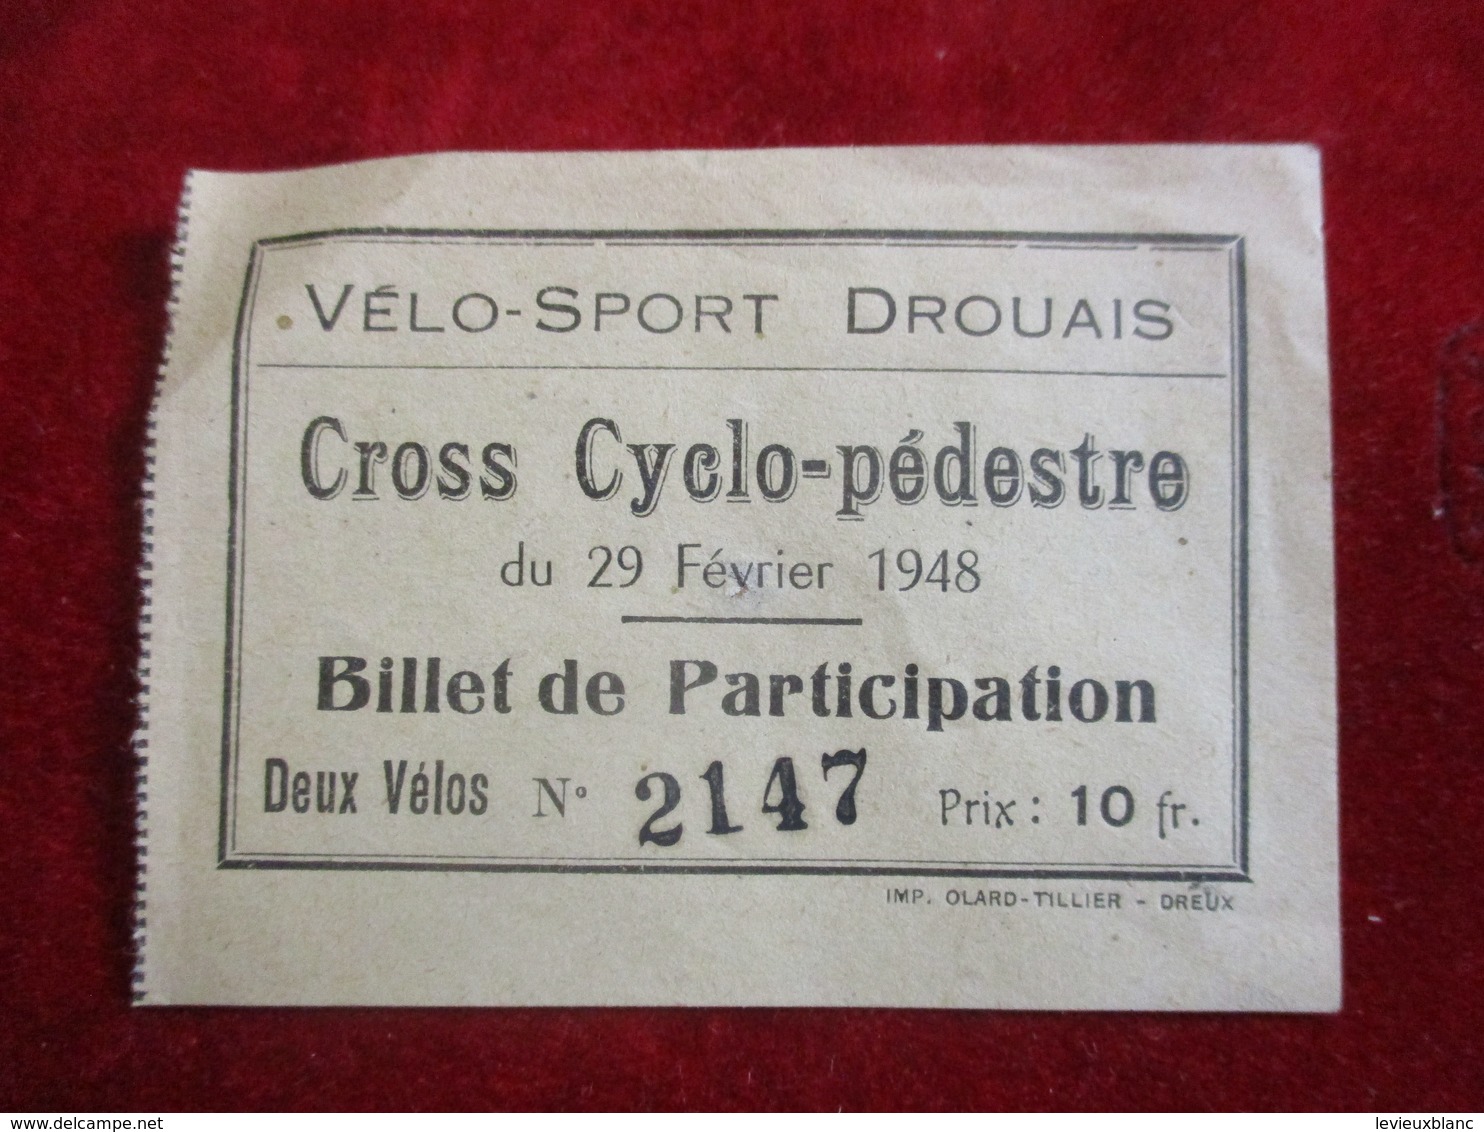 Billet De Participation/ Vélo-Sport Drouais / Cross Cyclo-pédestre/ DREUX /Ollard Tillier/ 1948   TCK168 - Radsport